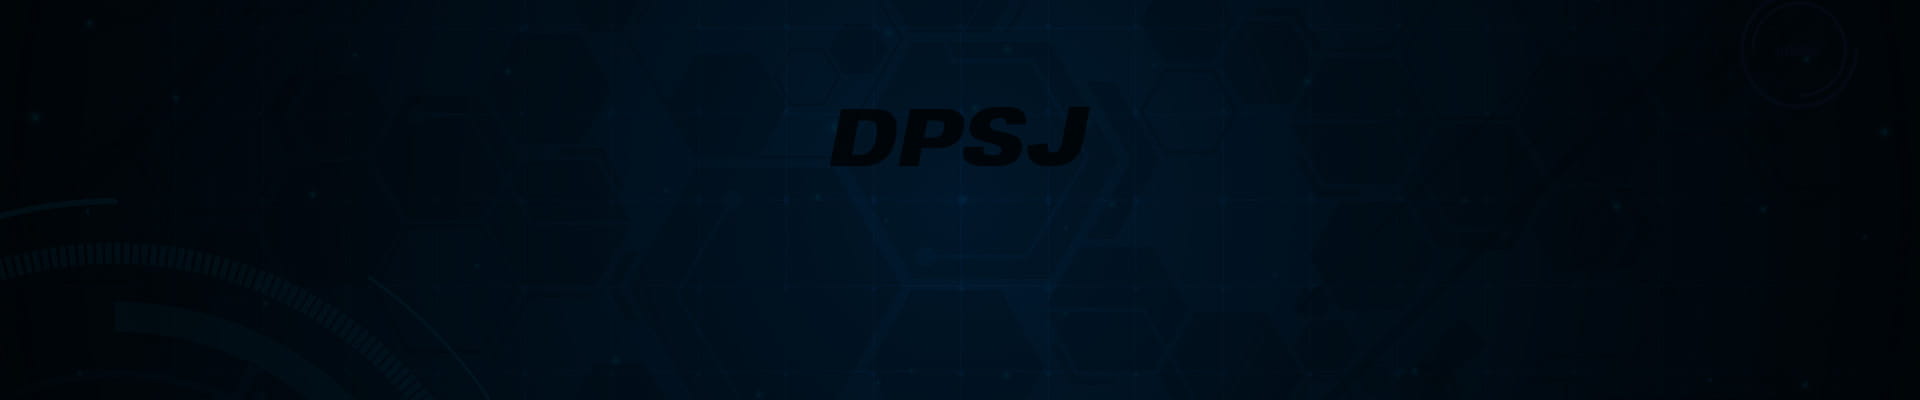 DPSJ 社 メディアアセットマネジメント・ソリューション「Metus MAM」の取扱を開始 および Metus MAM 製品紹介セミナー開催を発表！